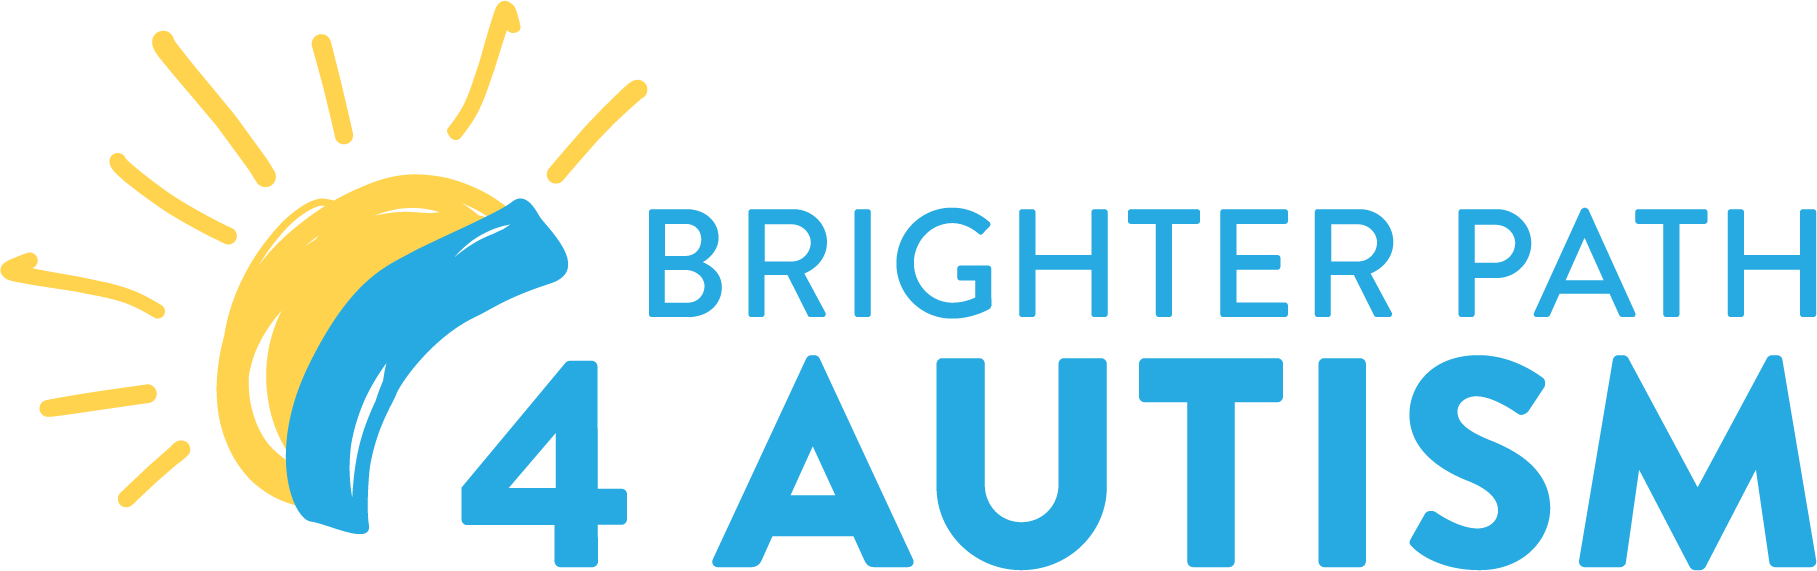 Brighter Path 4 Autism 